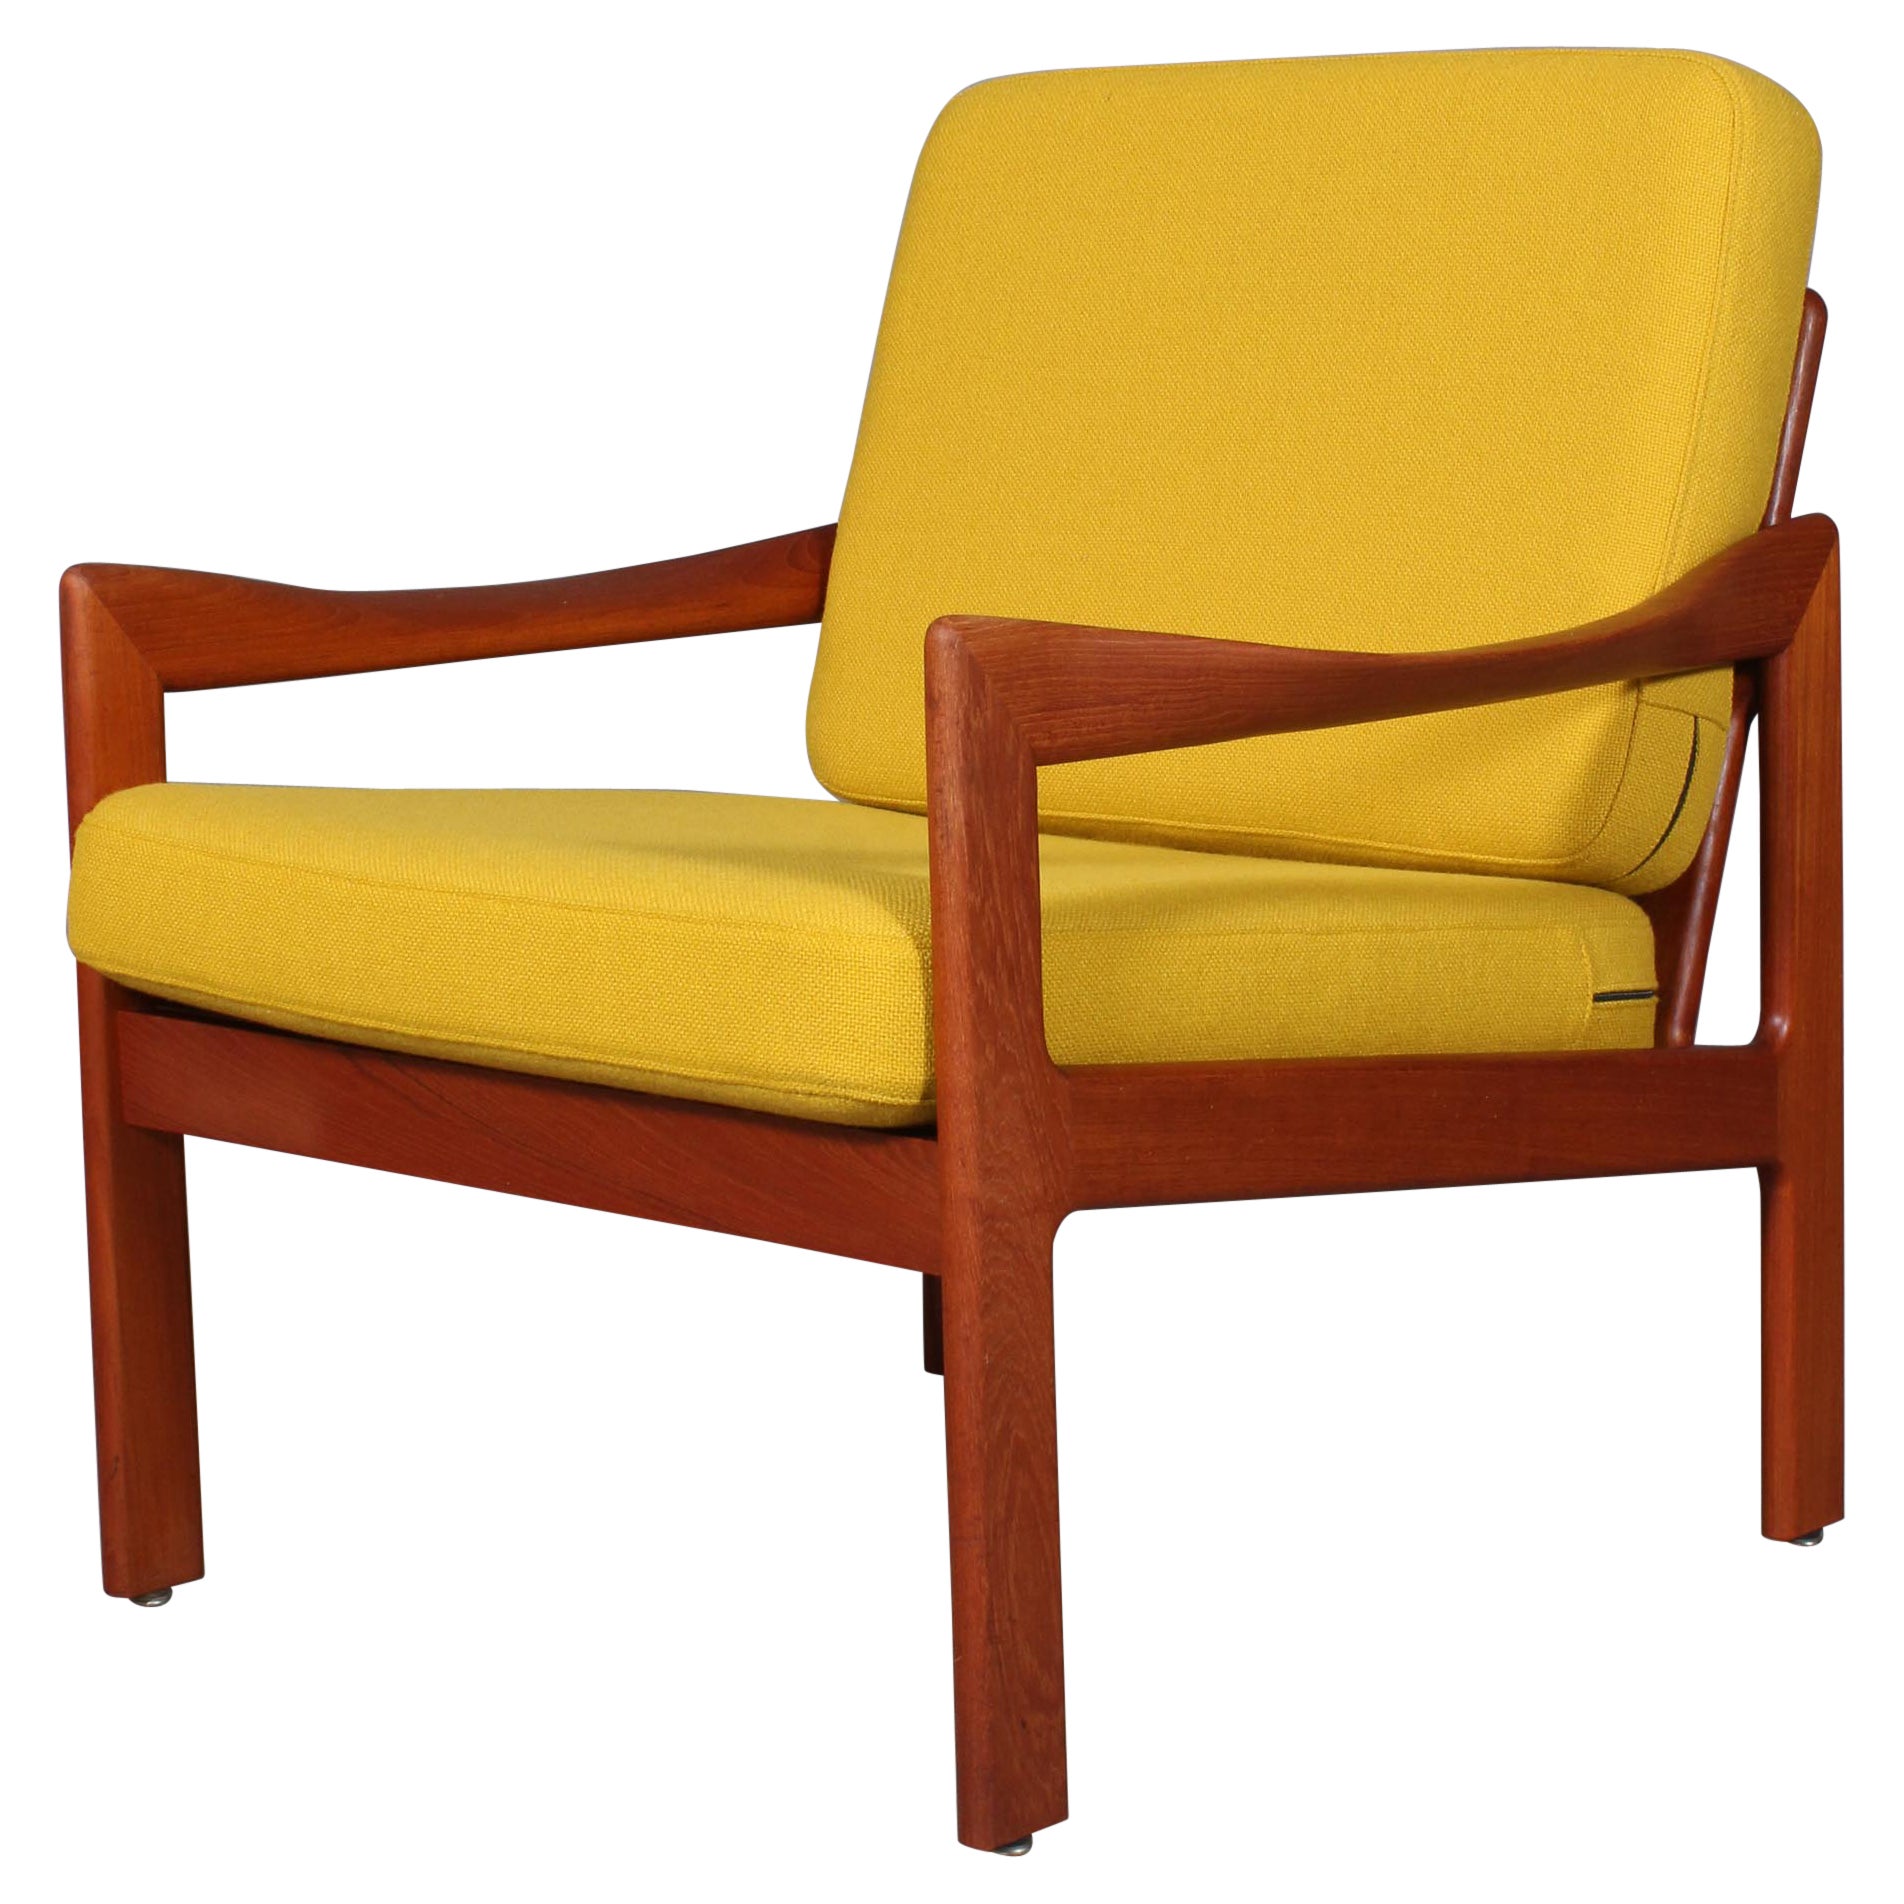 Illum Wikkelsø for N. Eilersen Lounge Chair, Model 20, in Solid Teak